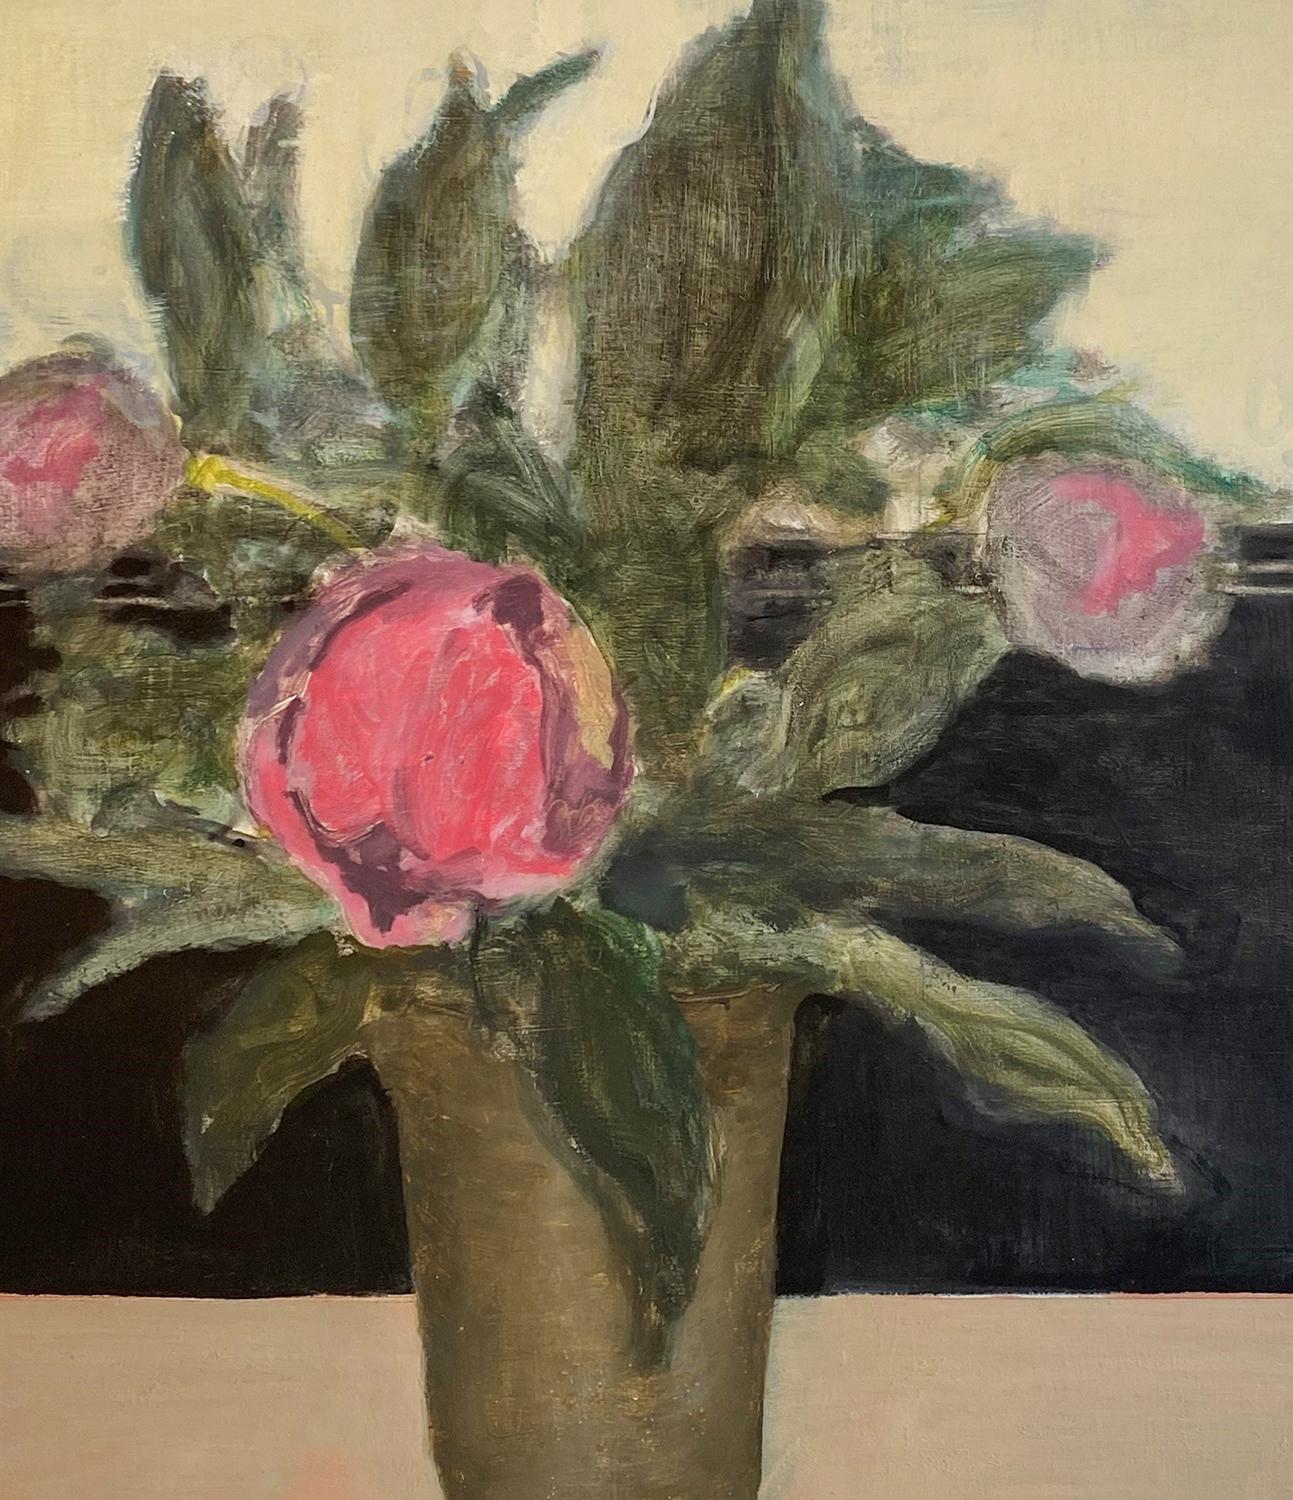 Vase dans la fenêtre (Nature morte florale impressionniste de pivoines rose magenta dans un vase sur fond de fenêtre blanc cassé) par David Konigsberg
huile sur panneau
50 x 36 x 1.5 pouces
aucun cadre n'est nécessaire - la peinture est câblée au